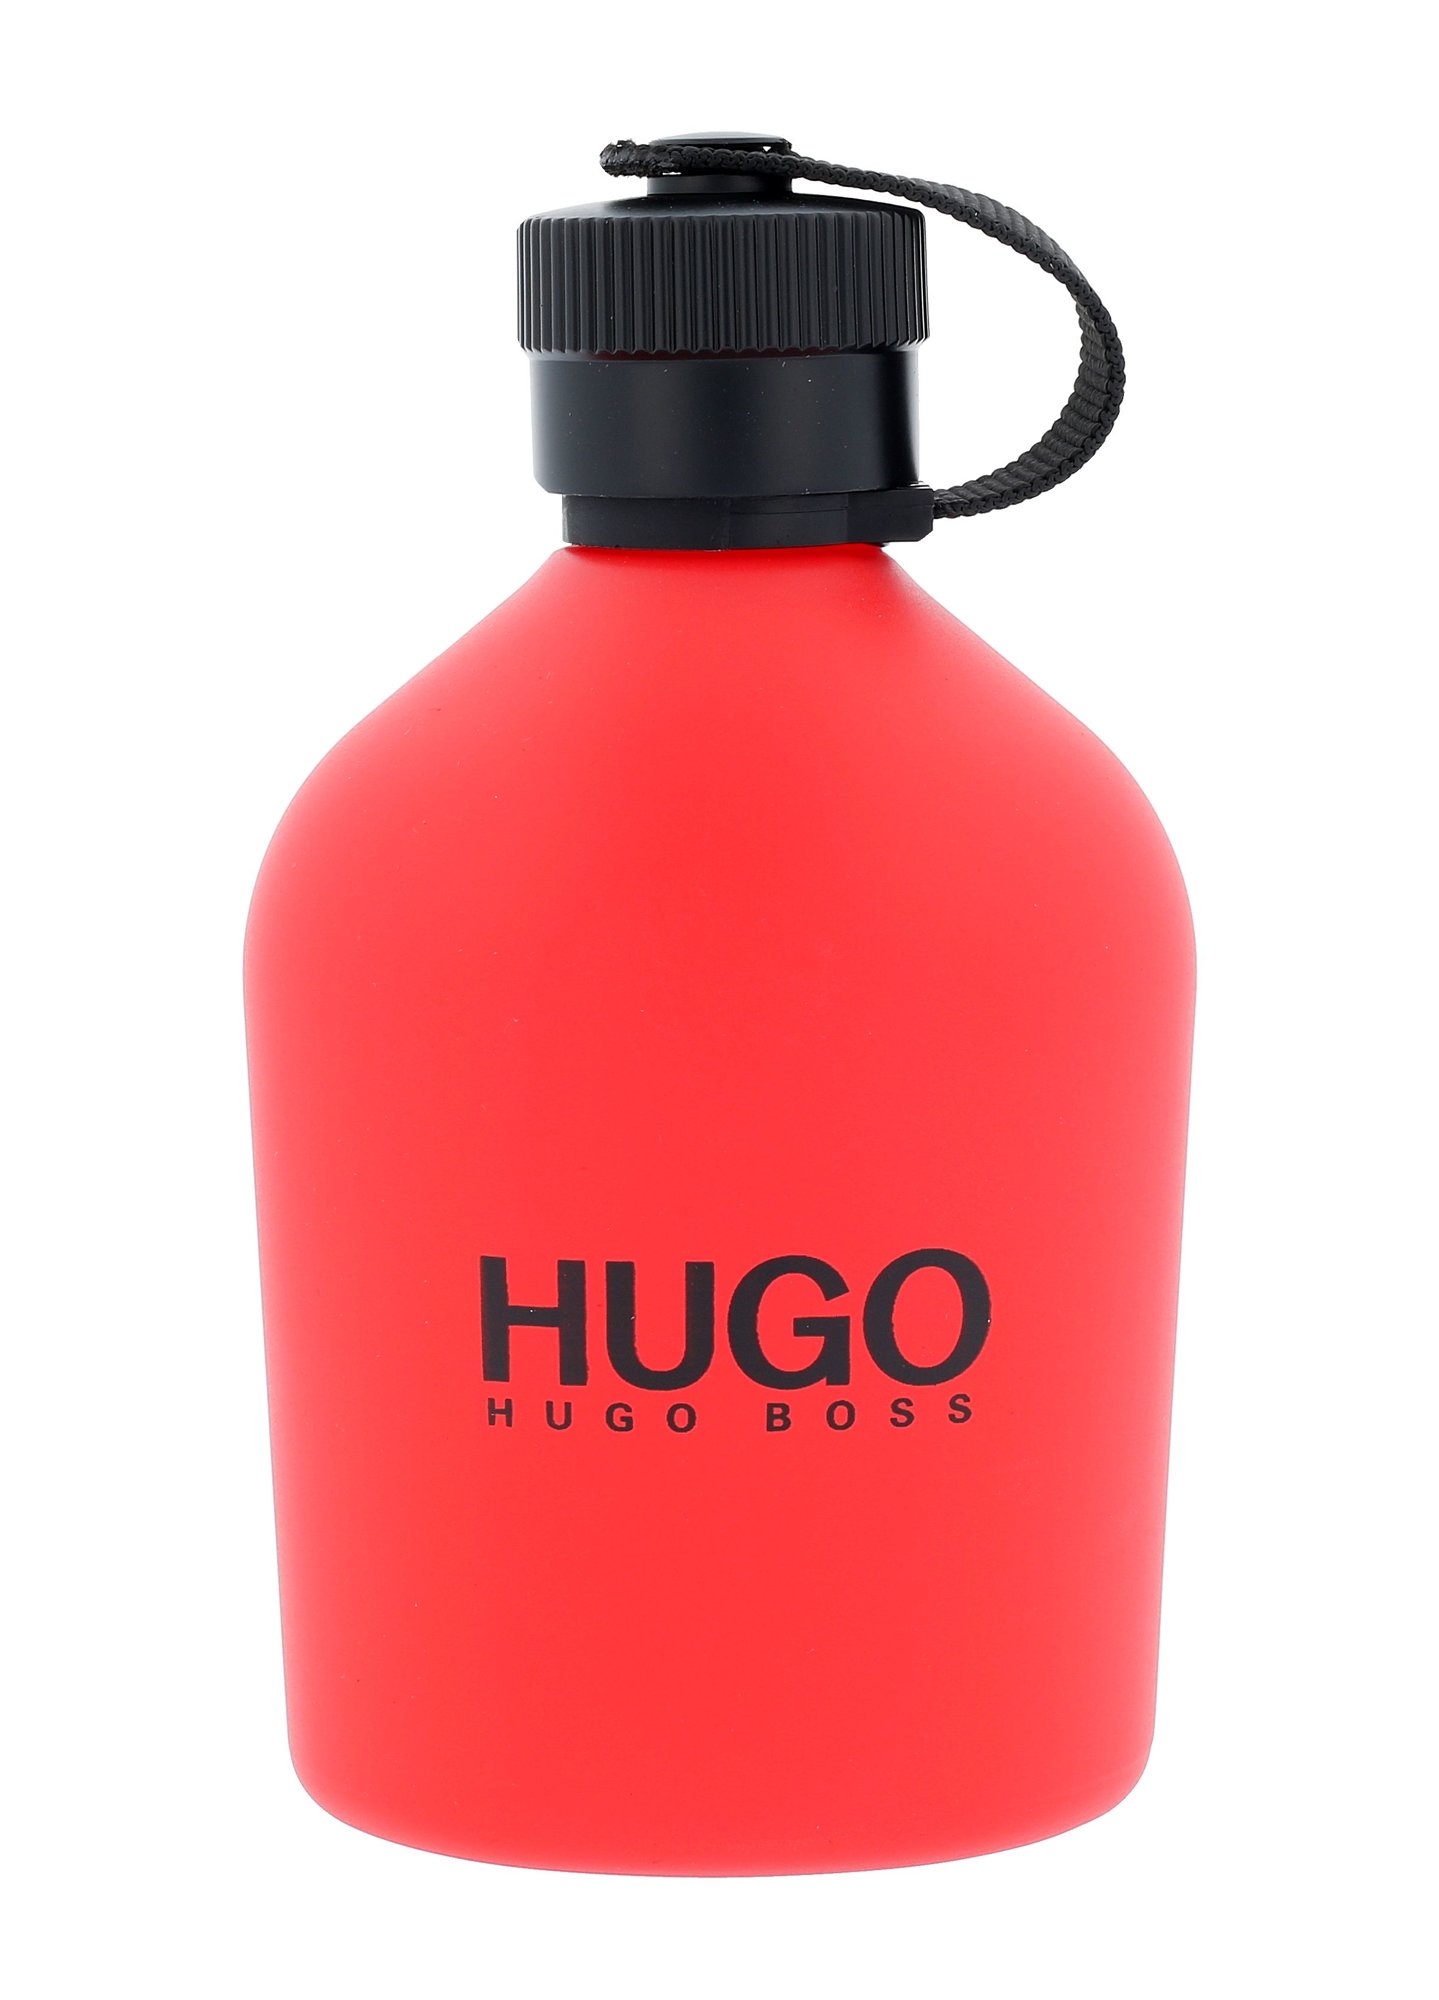 Hugo Boss Hugo Red